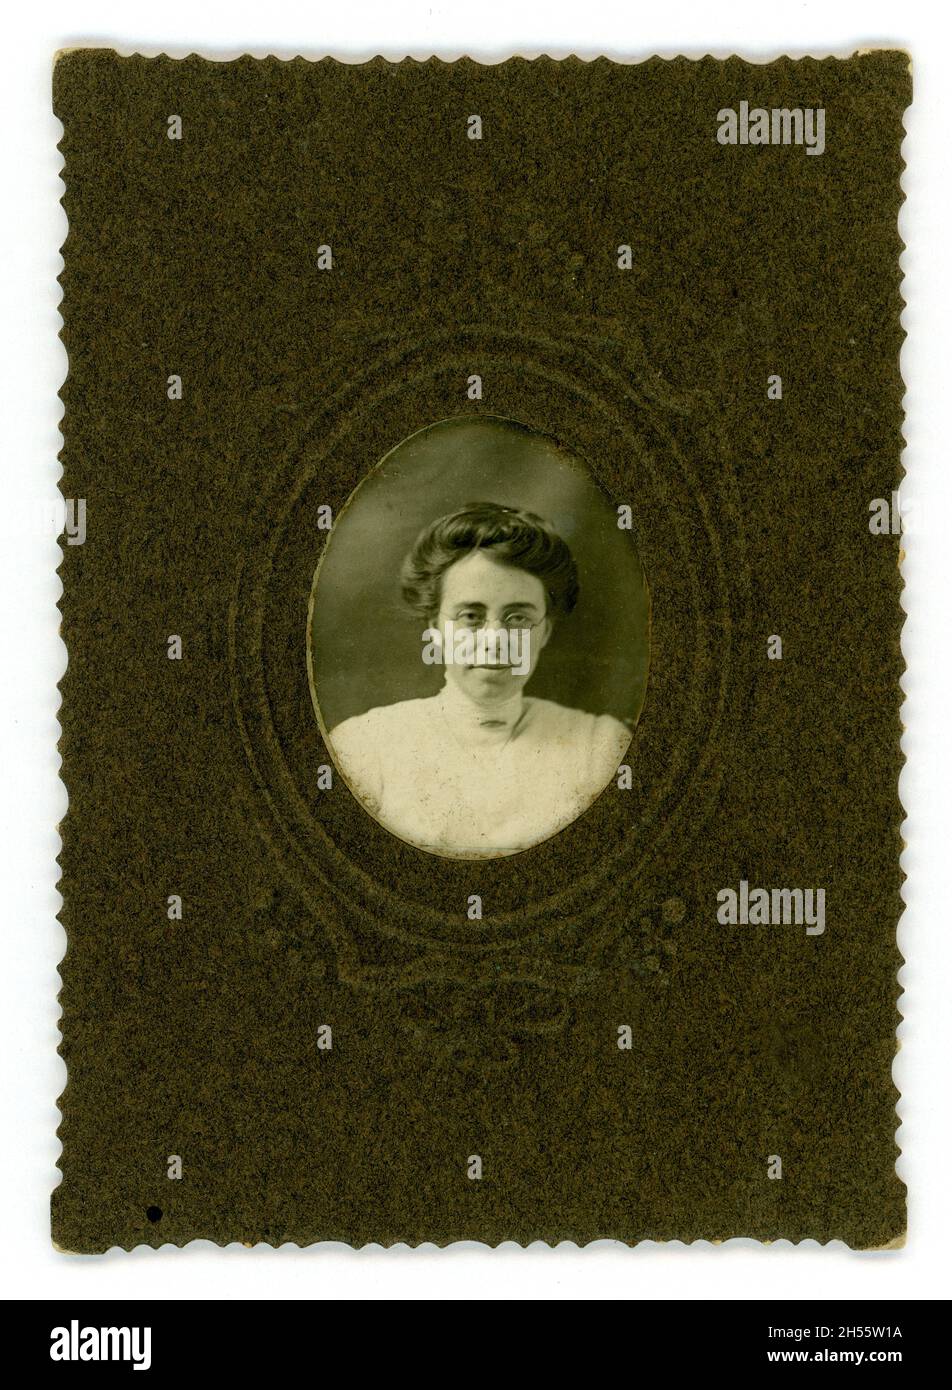 Photographie miniature de l'époque édouardienne d'une femme portant des lunettes, chemisier en dentelle à col haut, broche au cou, monture marron avec détail en relief, Royaume-Uni vers 1900 or1901 Banque D'Images